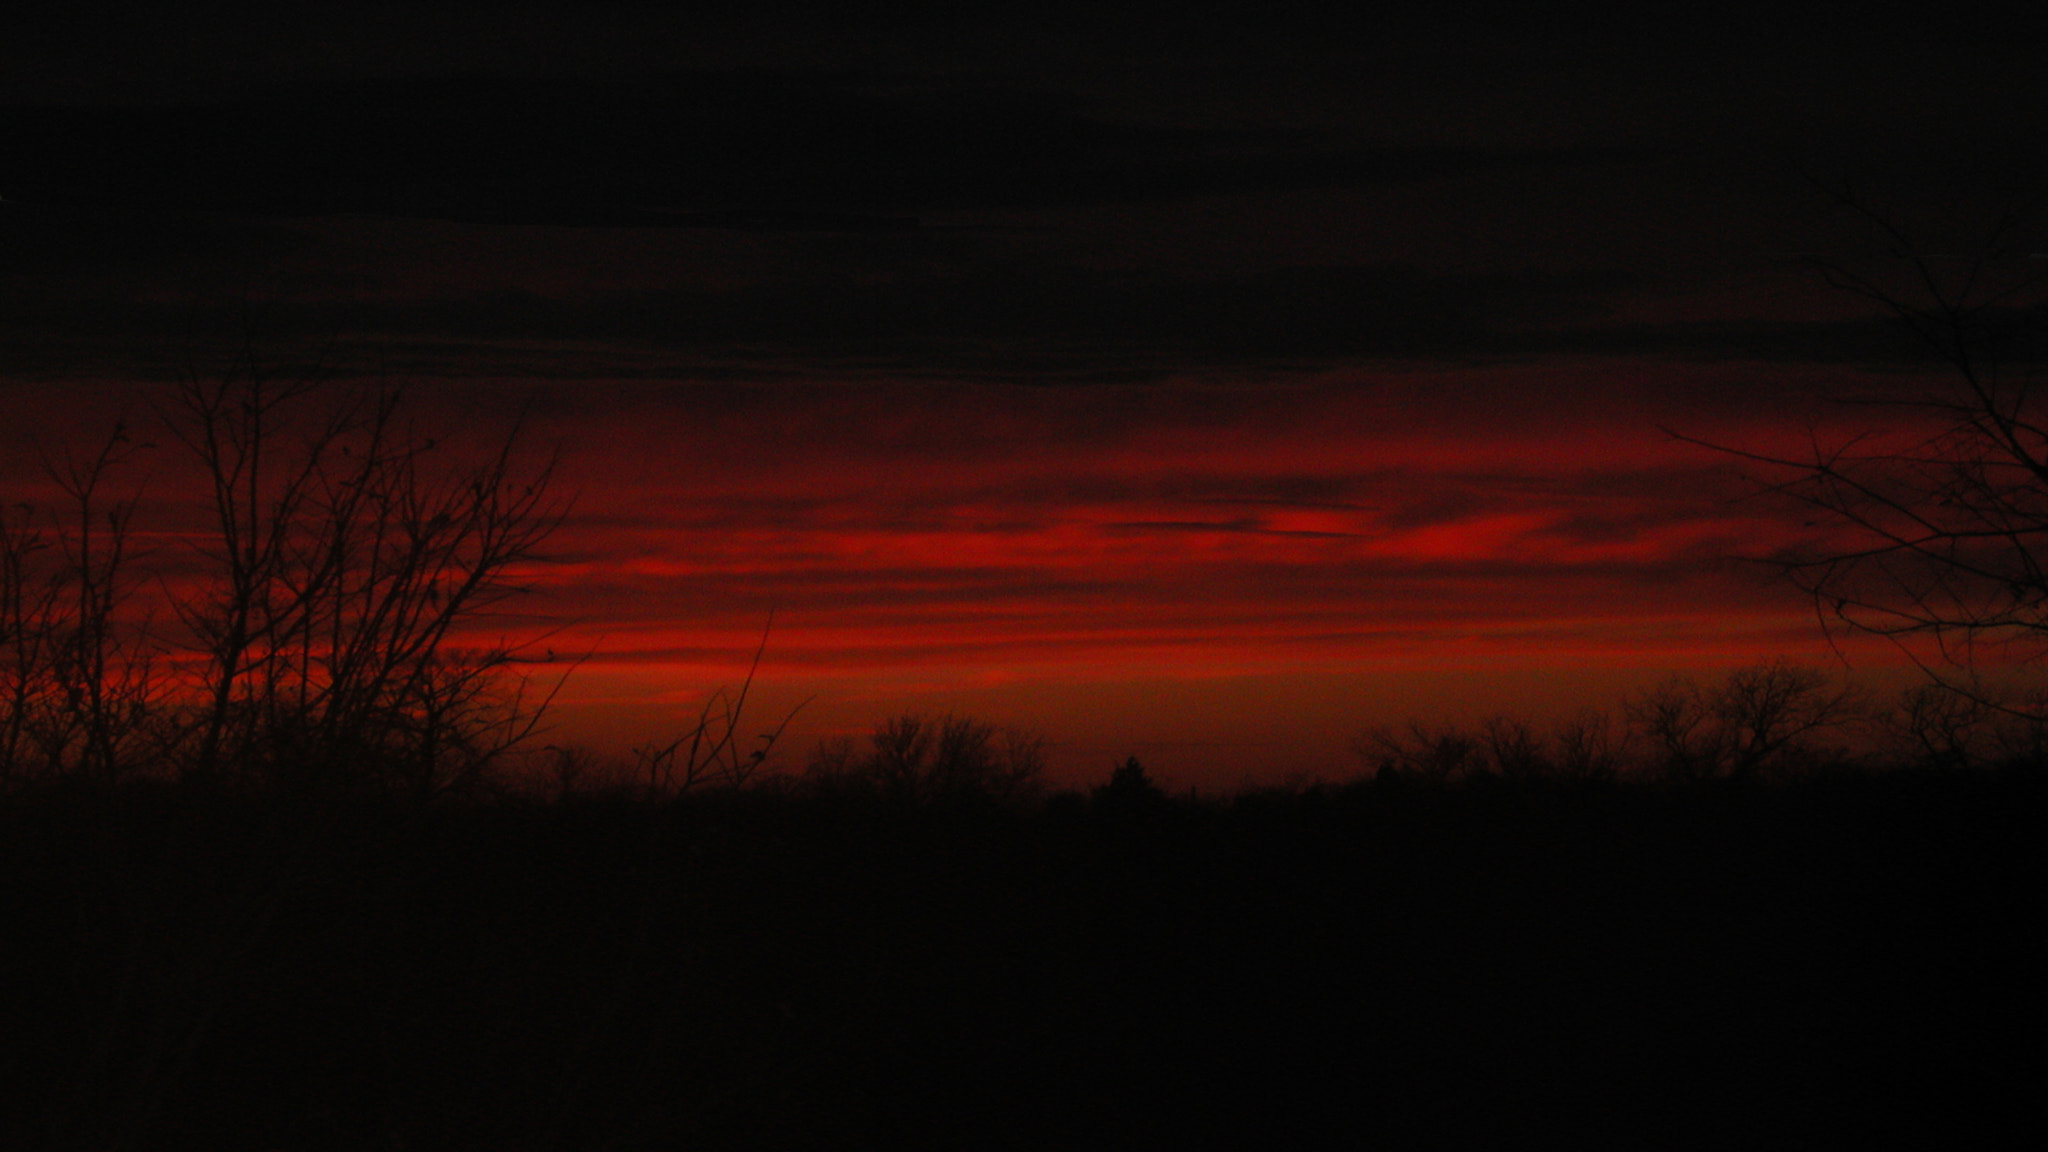 Nikon E990 sample photo. Old west sunset photography